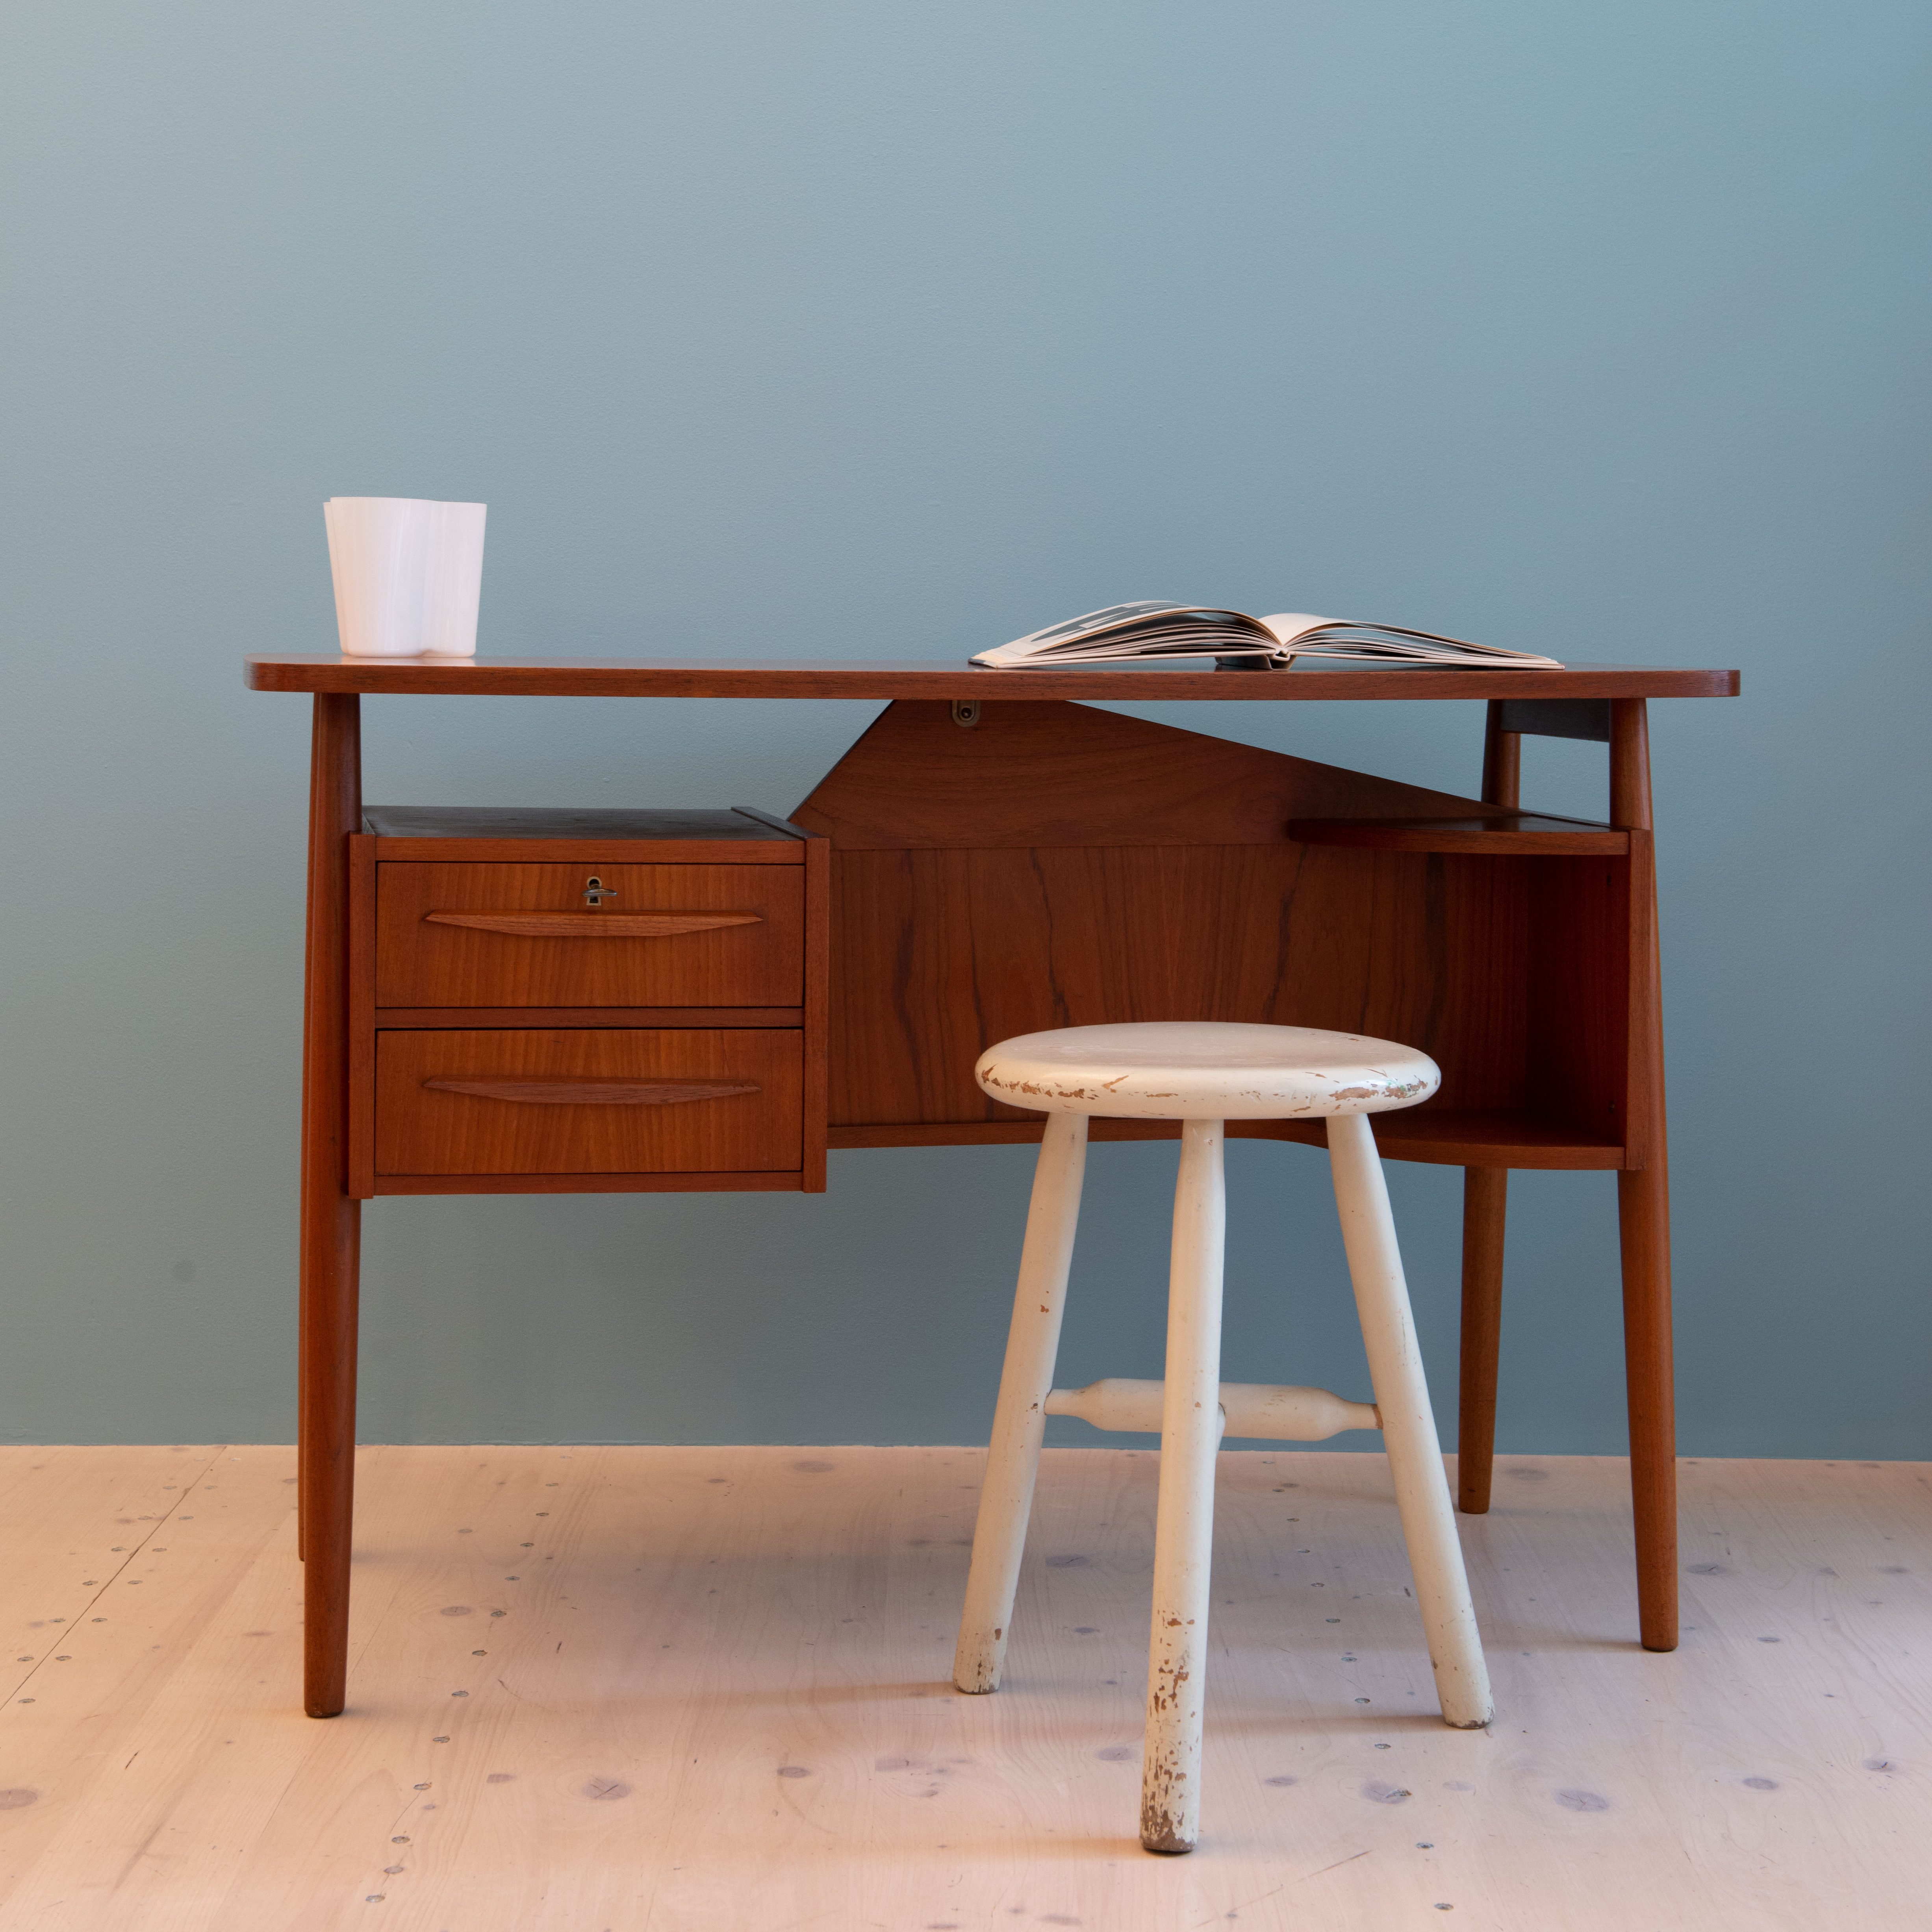 Gunnar Nielsen Tibergaard Teak Desk, produced in Denmark in the 1960s, available at heyday möbel, Grubenstrasse 19, 8045, Zürich.